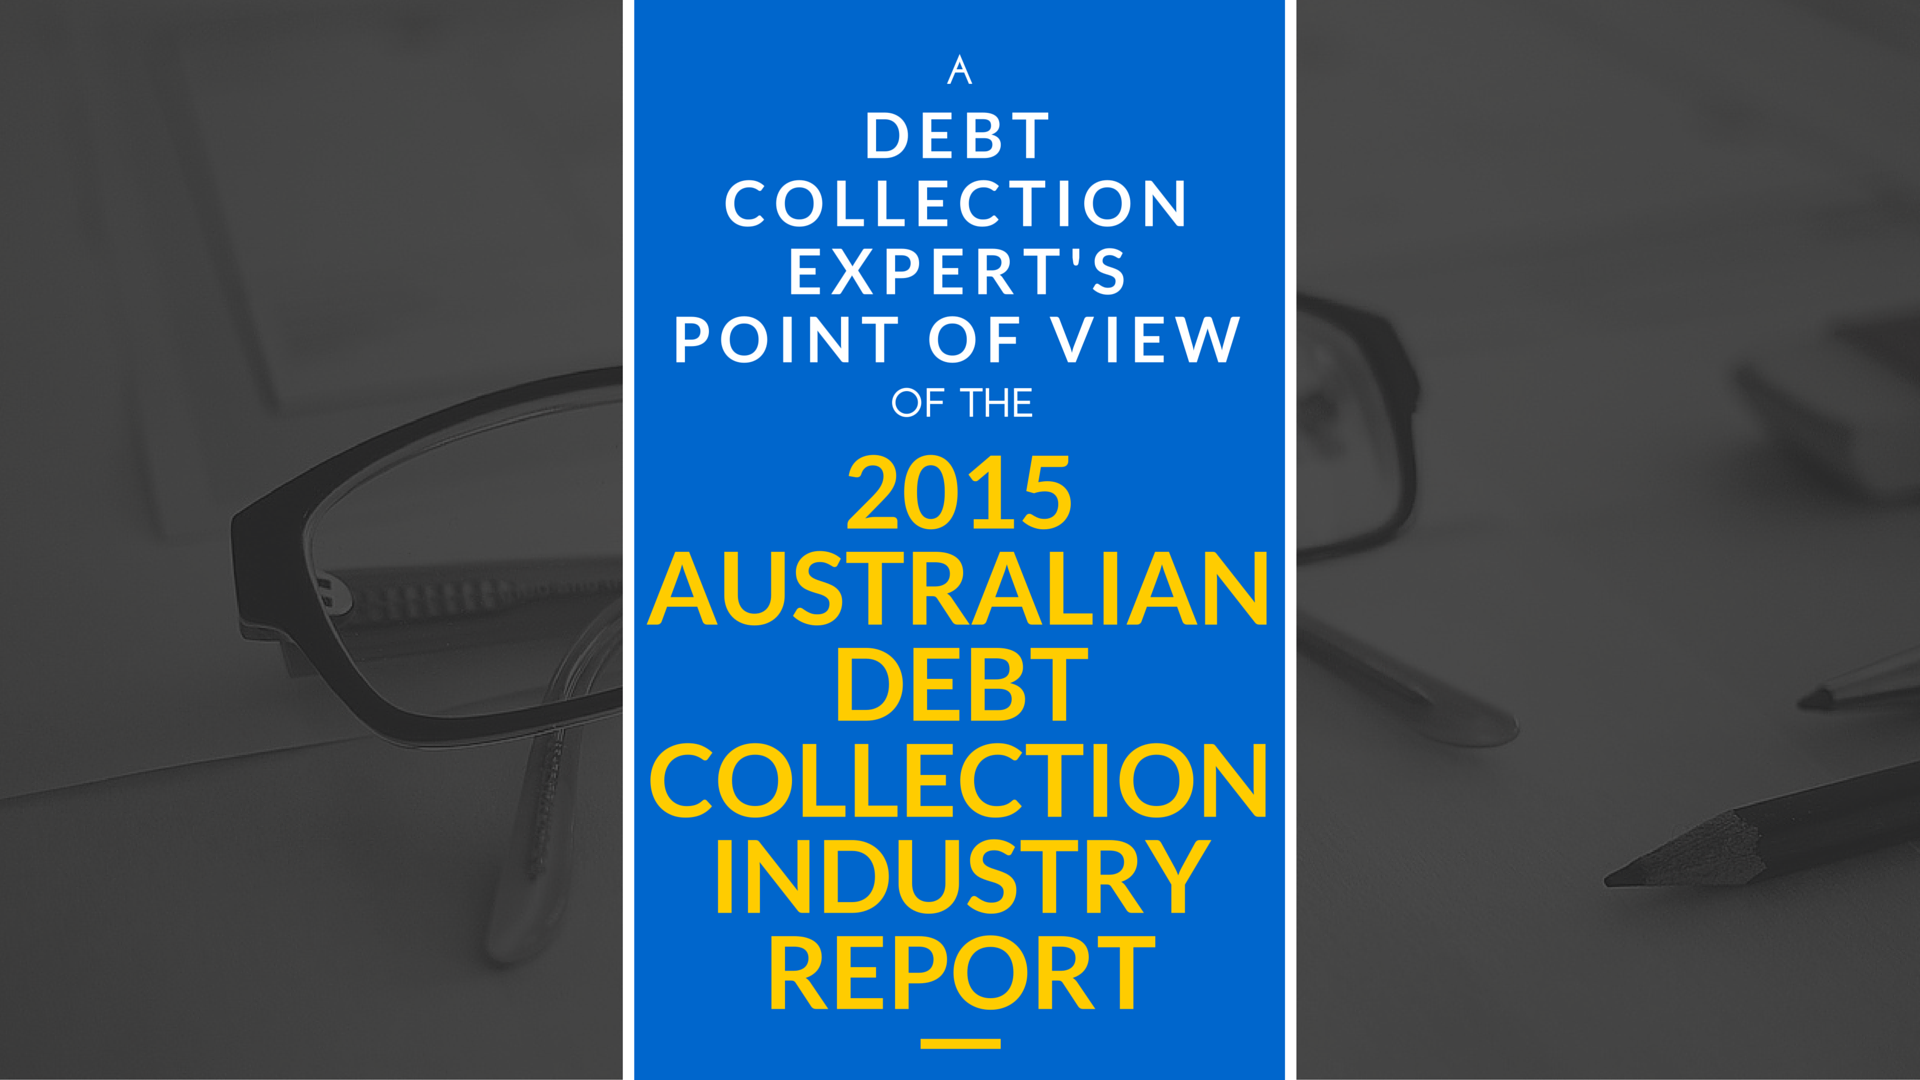 "debt collection expert","debt collection"